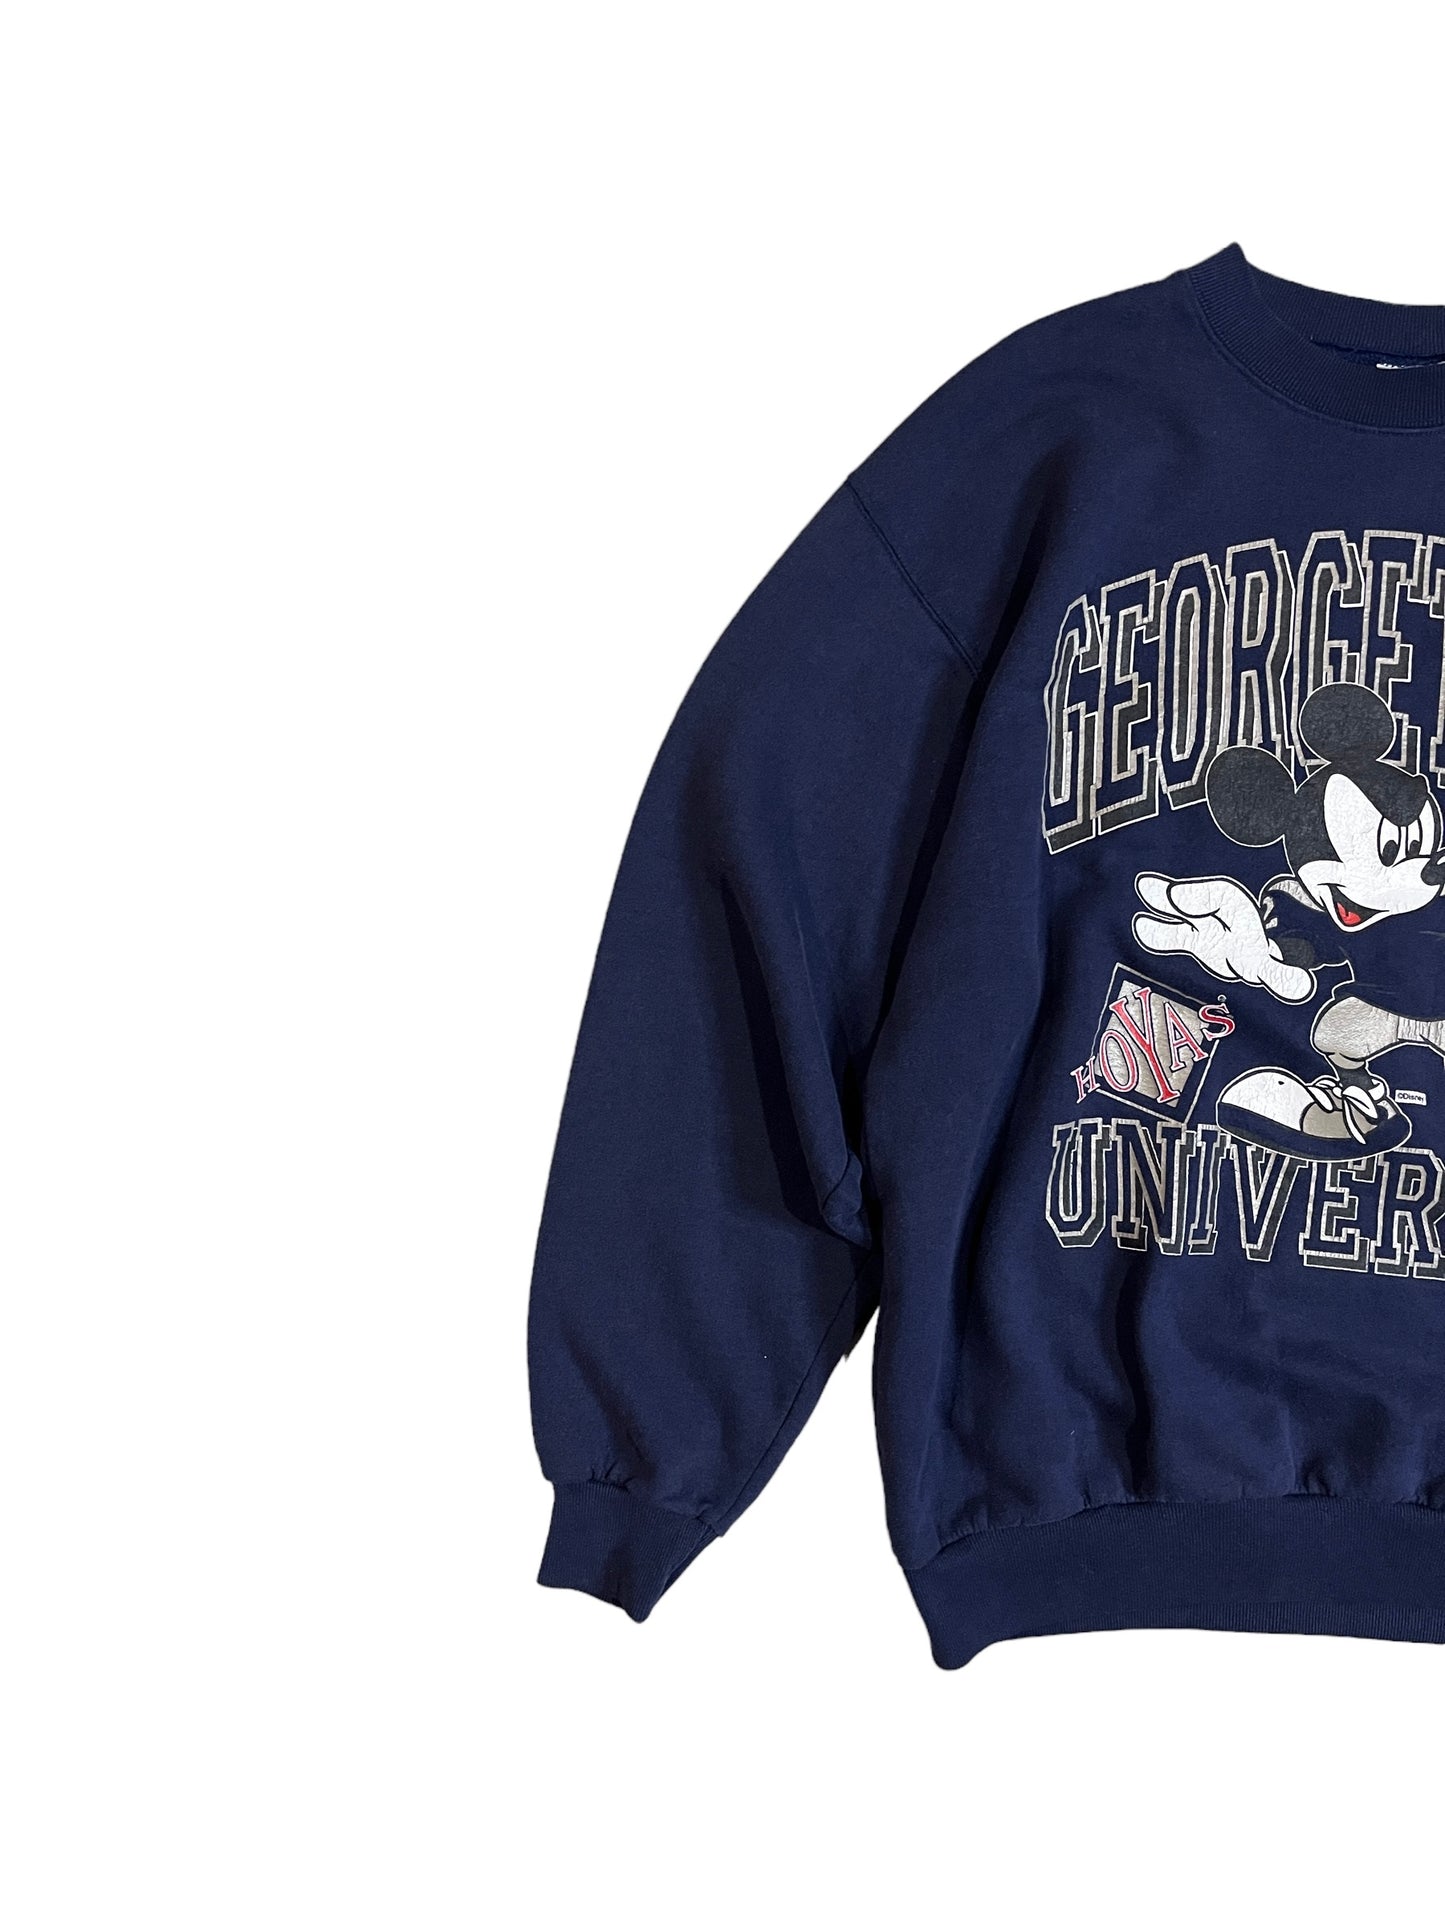 Vintage 90's Georgetown University Sweater